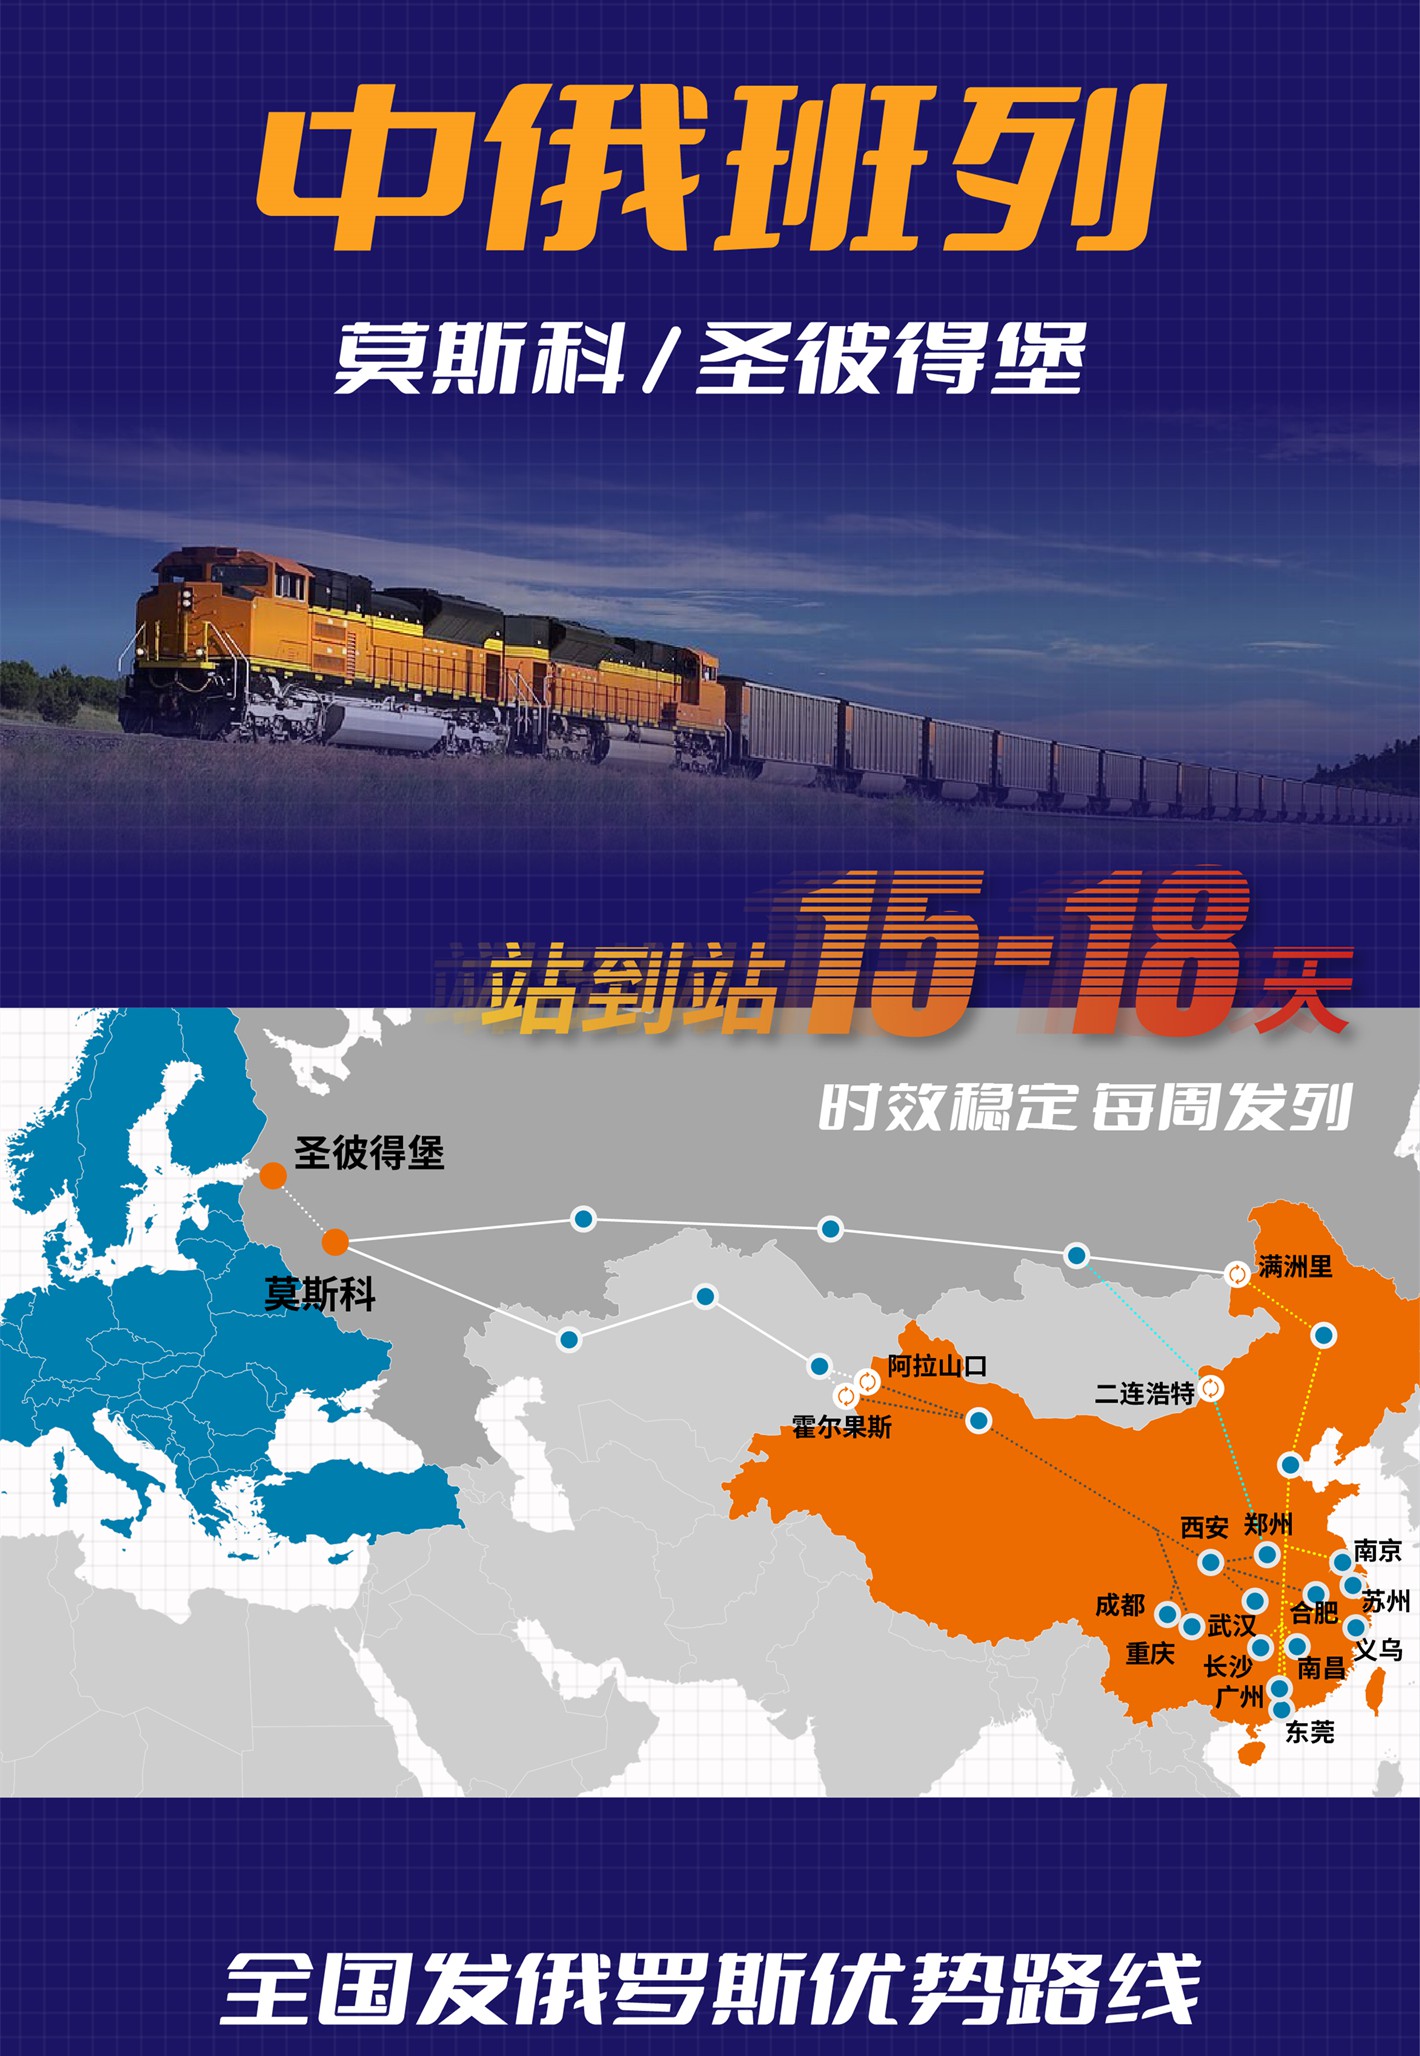 化工品铁路拼箱DDP/DDU/DAP至中亚全境DDU货代公司